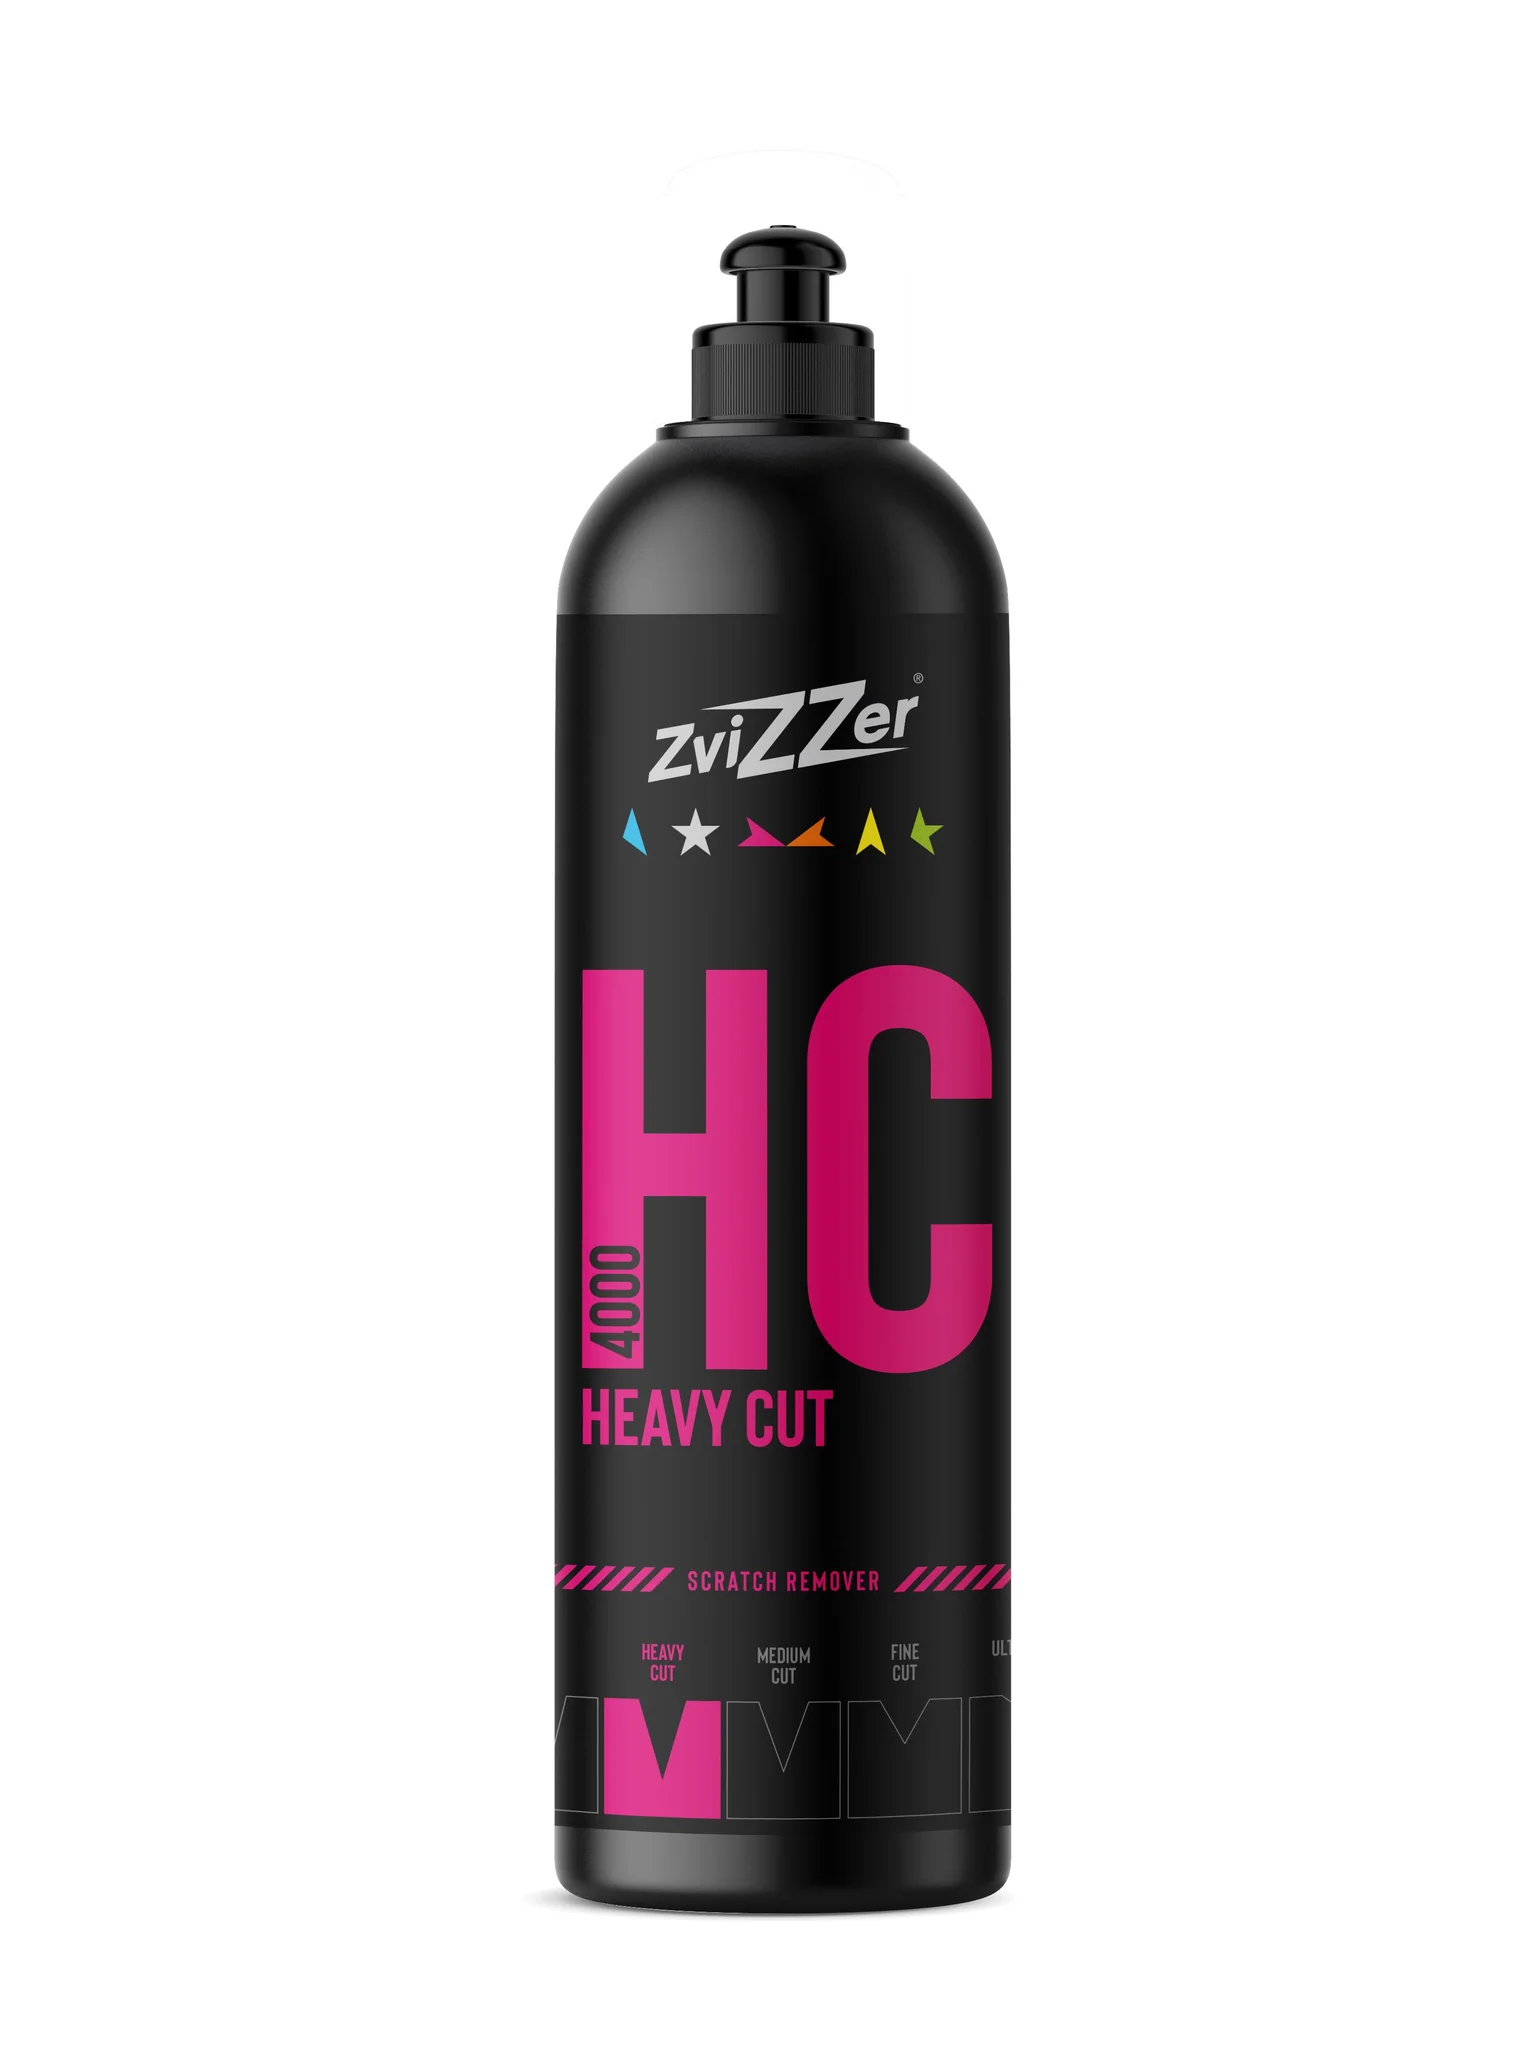  HC 4000 Heavy Cut - Xi đánh bóng bề mặt sơn 